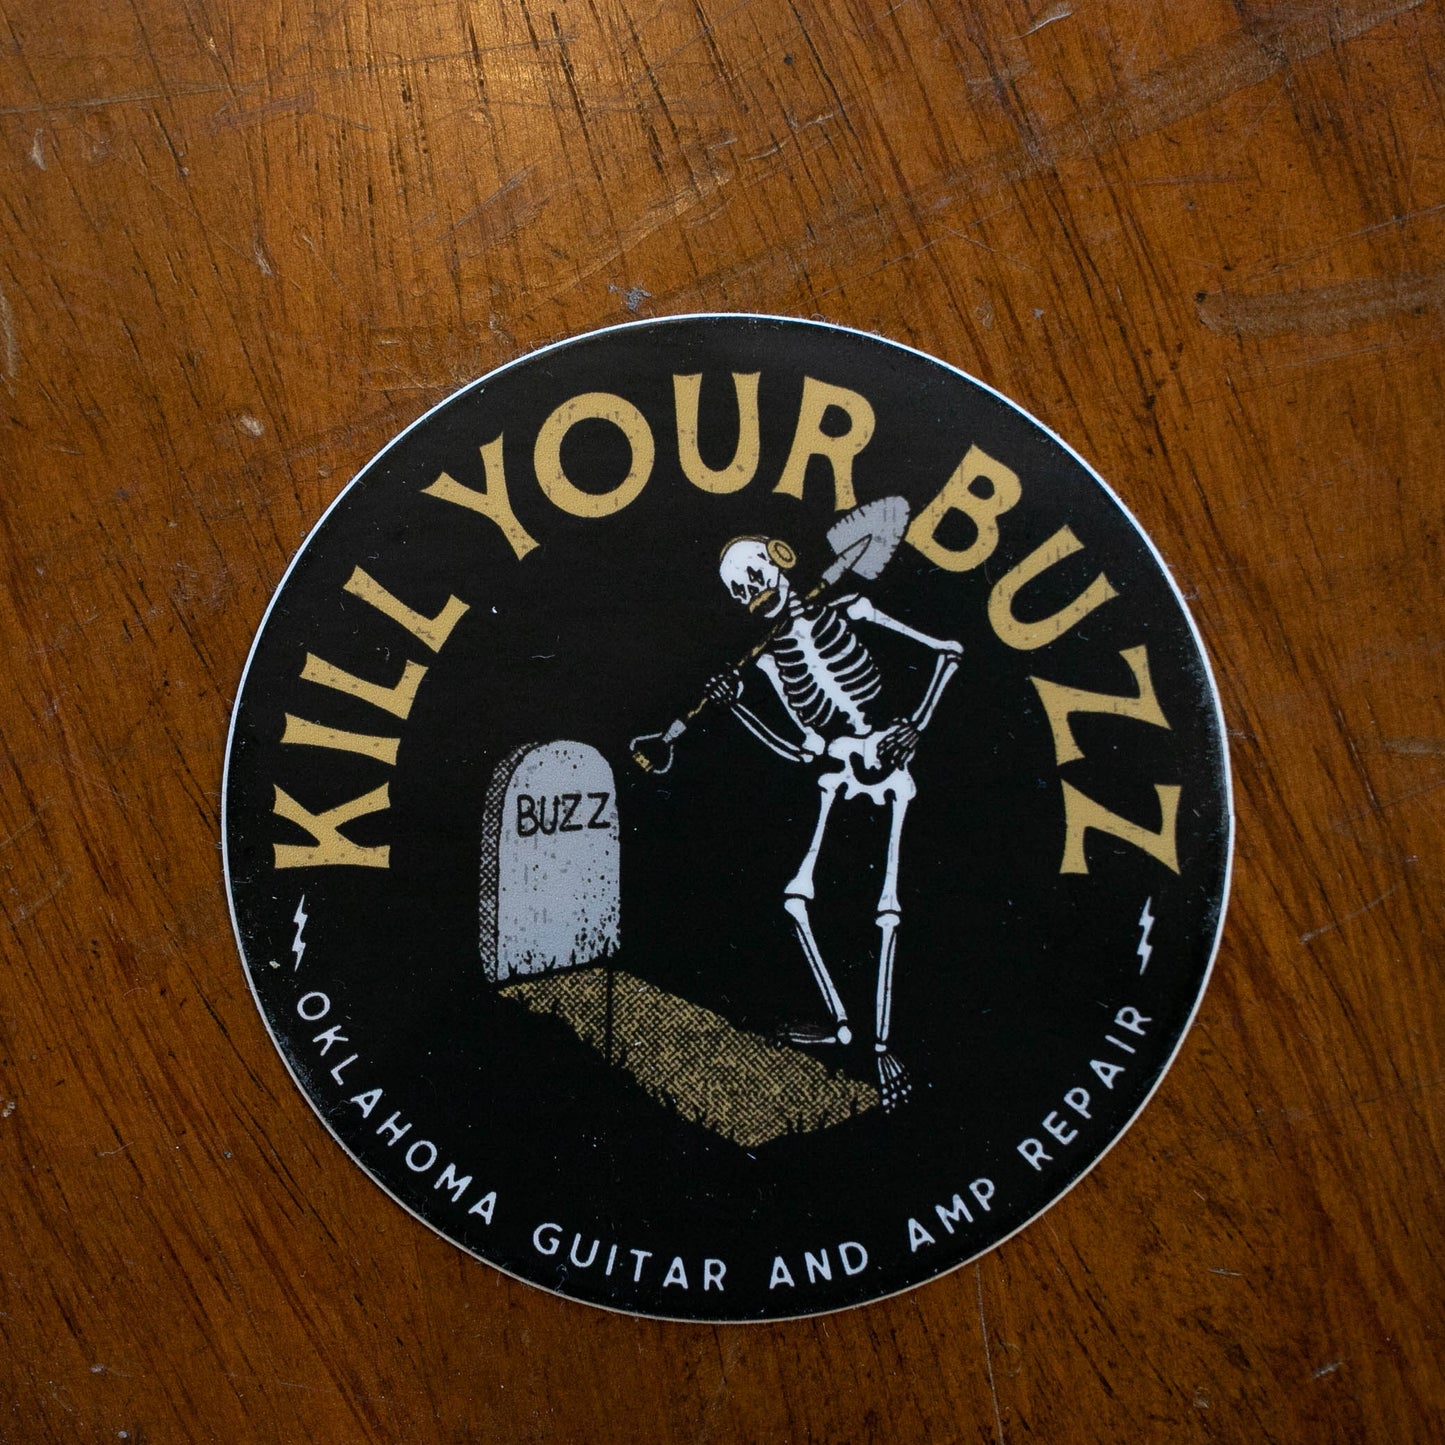 OKGAR "Kill Your Buzz" Sticker